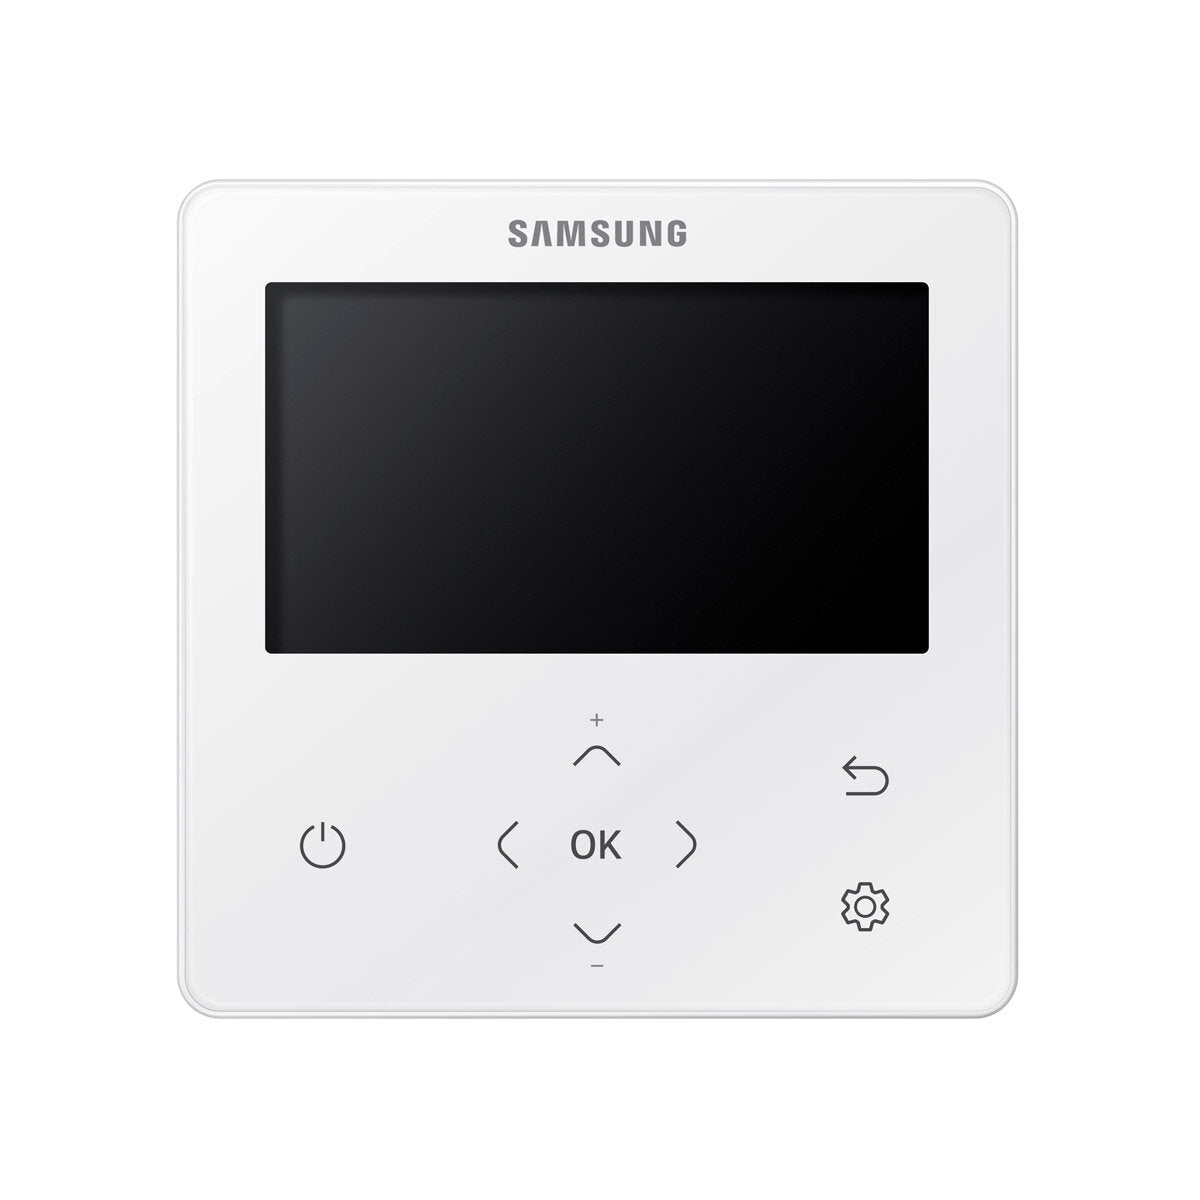 Samsung Air Conditioner Cassette WindFree 1 Way penta split 9000 + 9000 + 9000 + 9000 + 9000 BTU inverter A ++ outdoor unit 10.0 kW